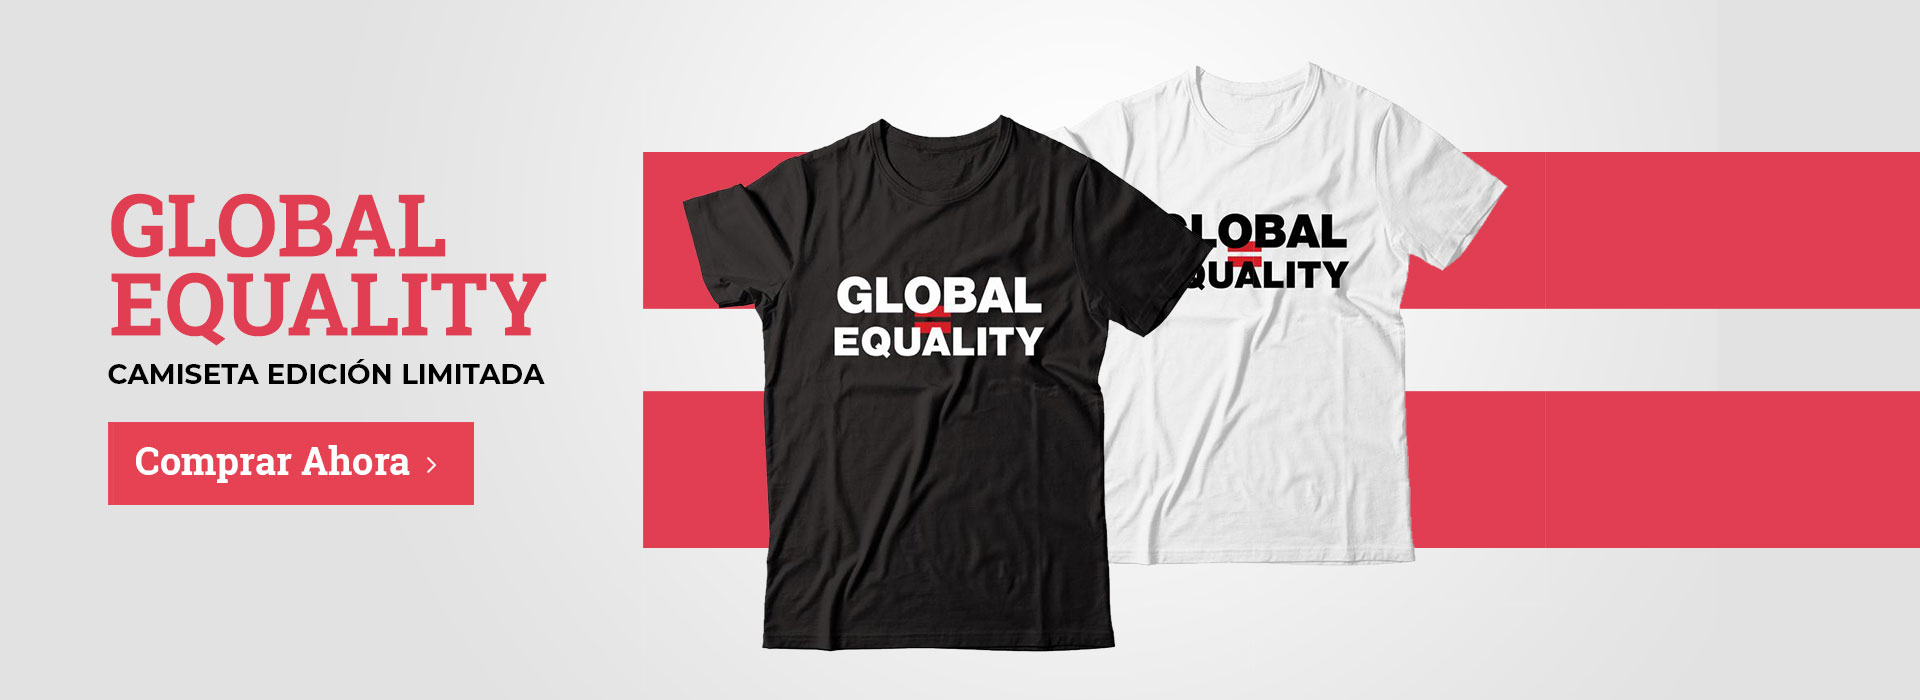 Global Equality Camisetas Limitadas Solidarias